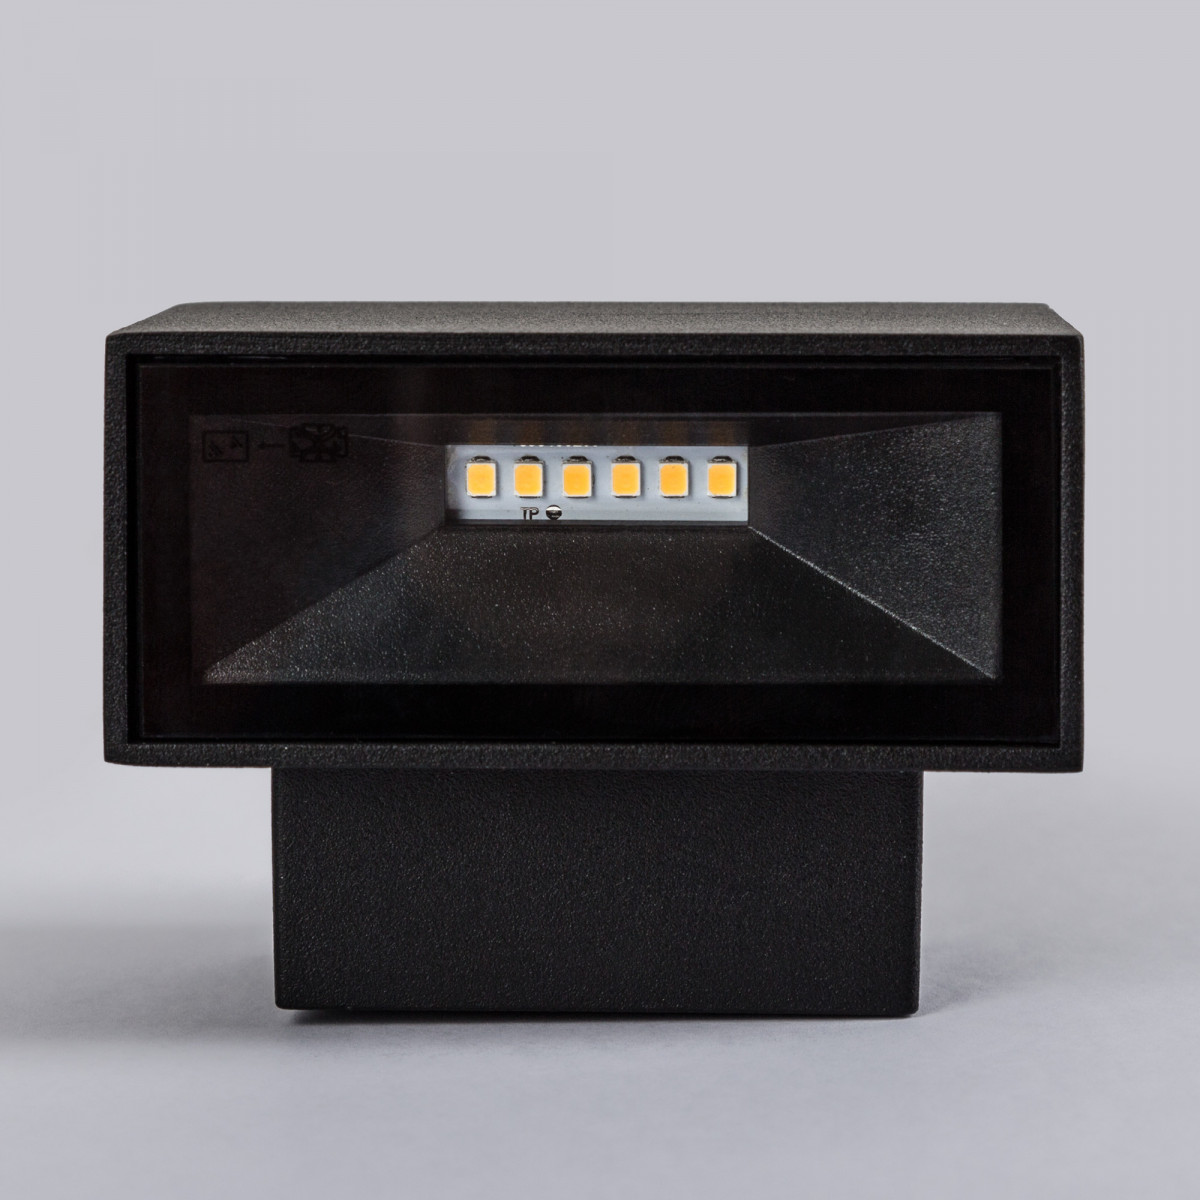 LED Gevelspot Segment Small een prachtige compacte stijlvolle aluminium LED wandspot met zwarte finish, weerbestendig en duurzame buitenverlichting van KS Verlichting